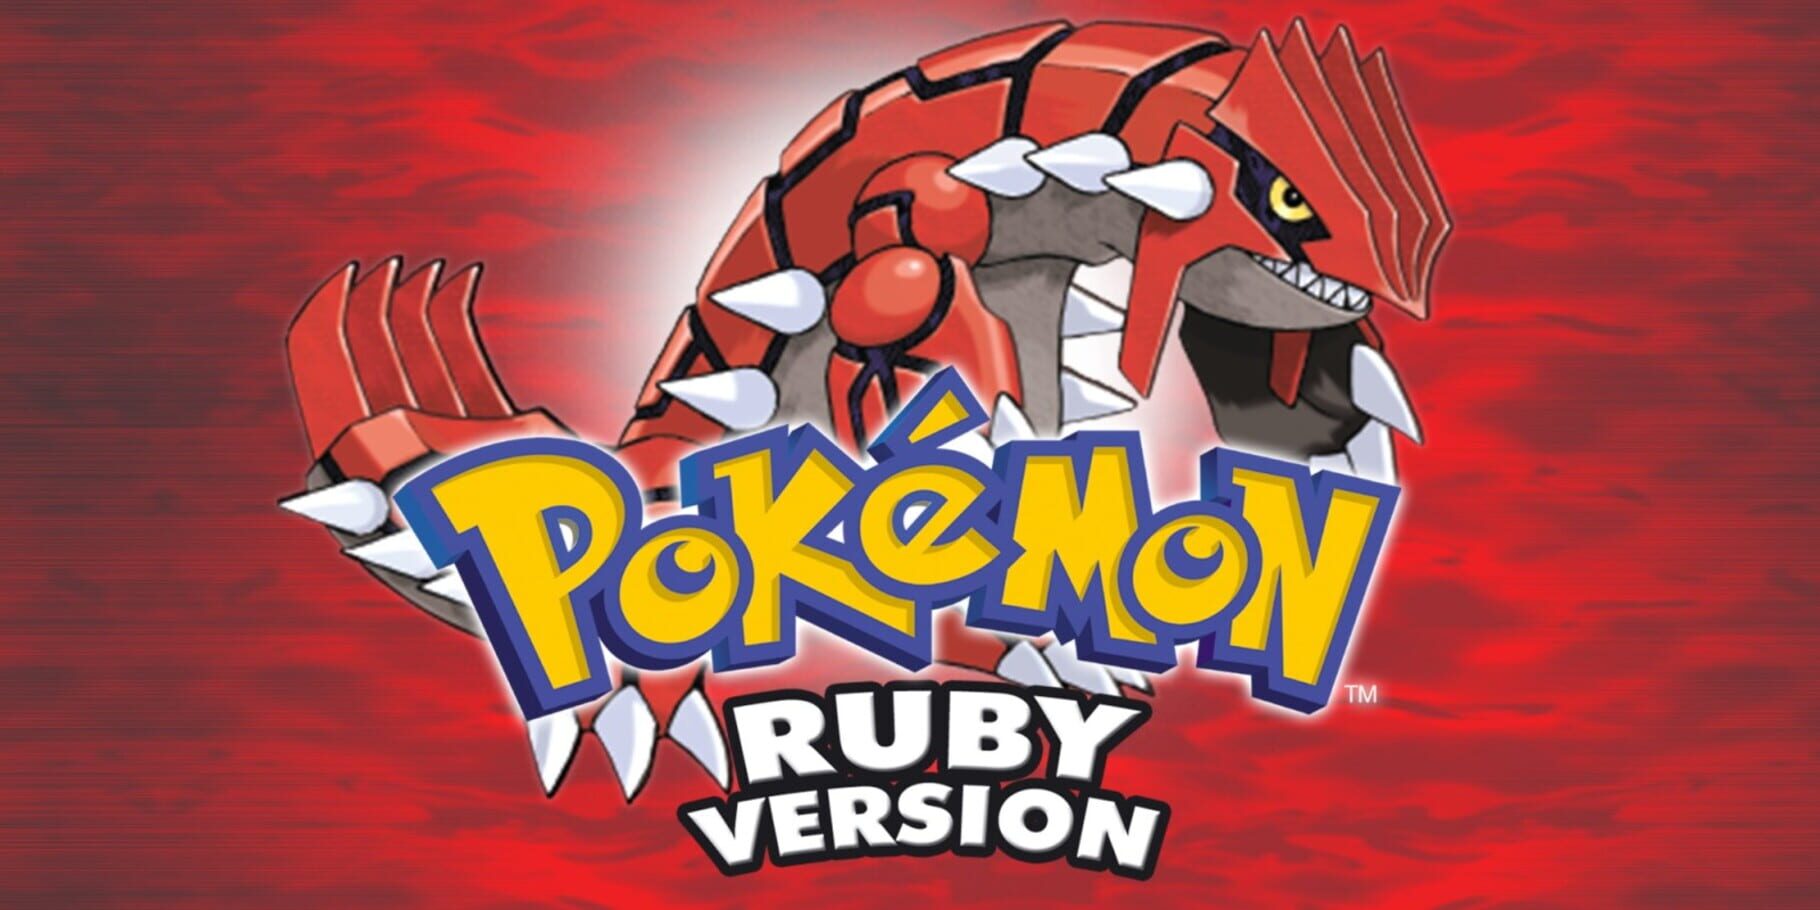 Arte - Pokémon Ruby Version